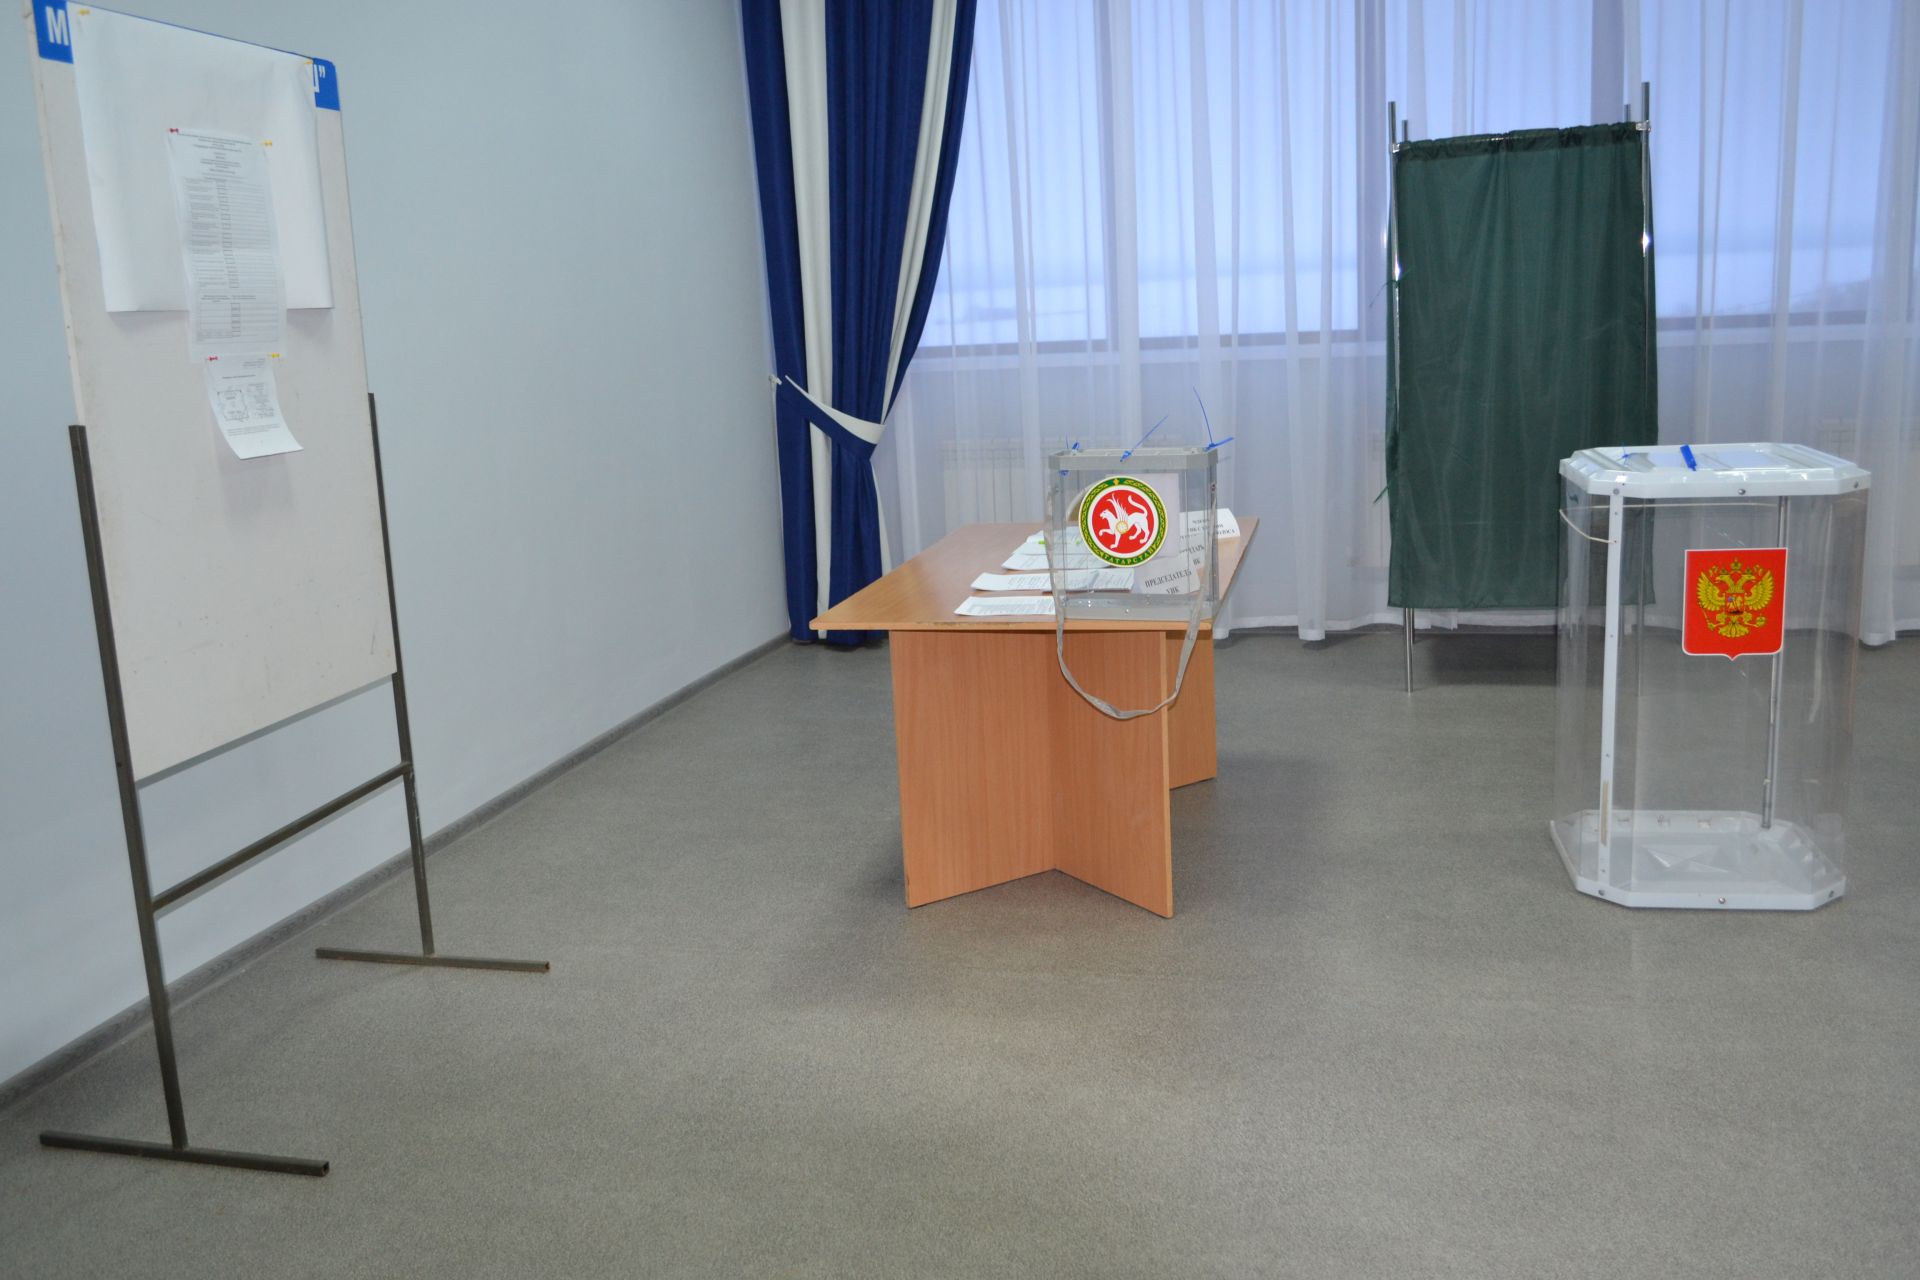 Выборы Президента Российской Федерации будут самыми открытыми и прозрачными